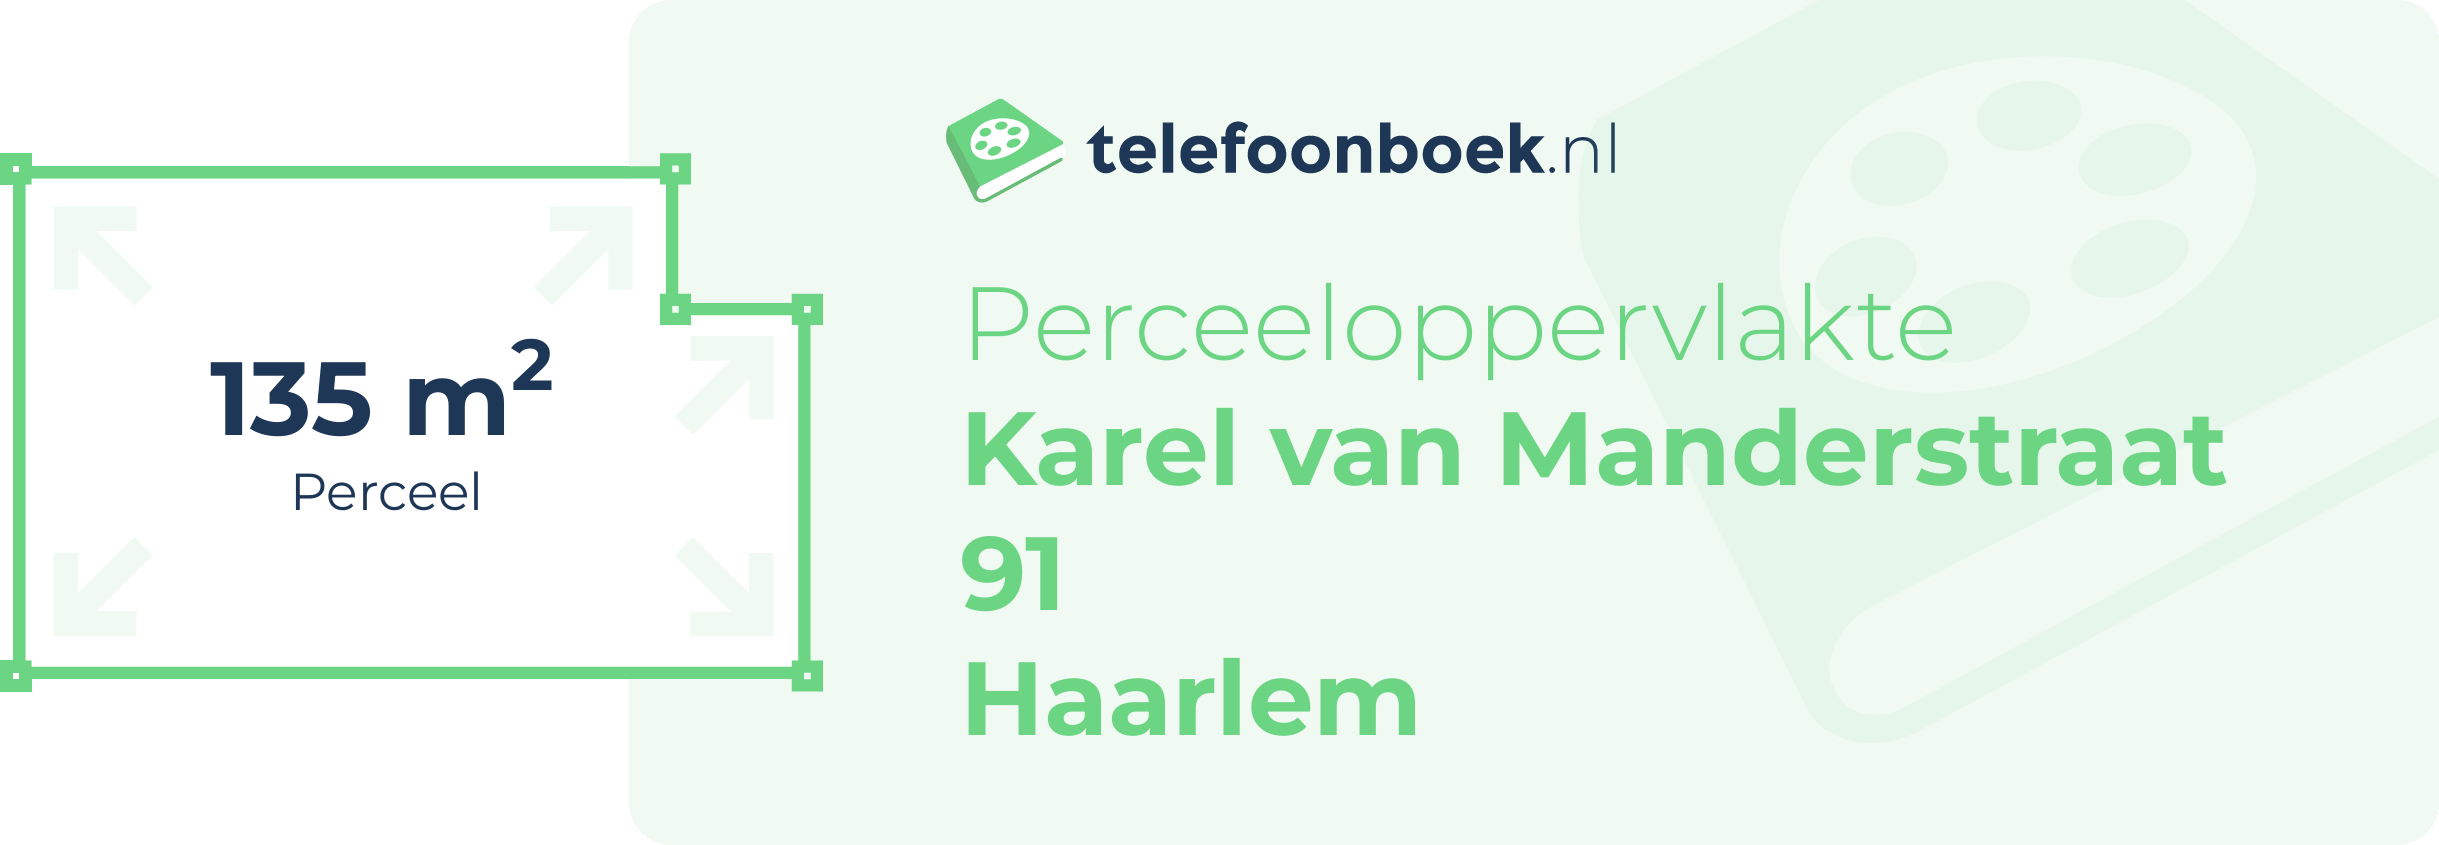 Perceeloppervlakte Karel Van Manderstraat 91 Haarlem